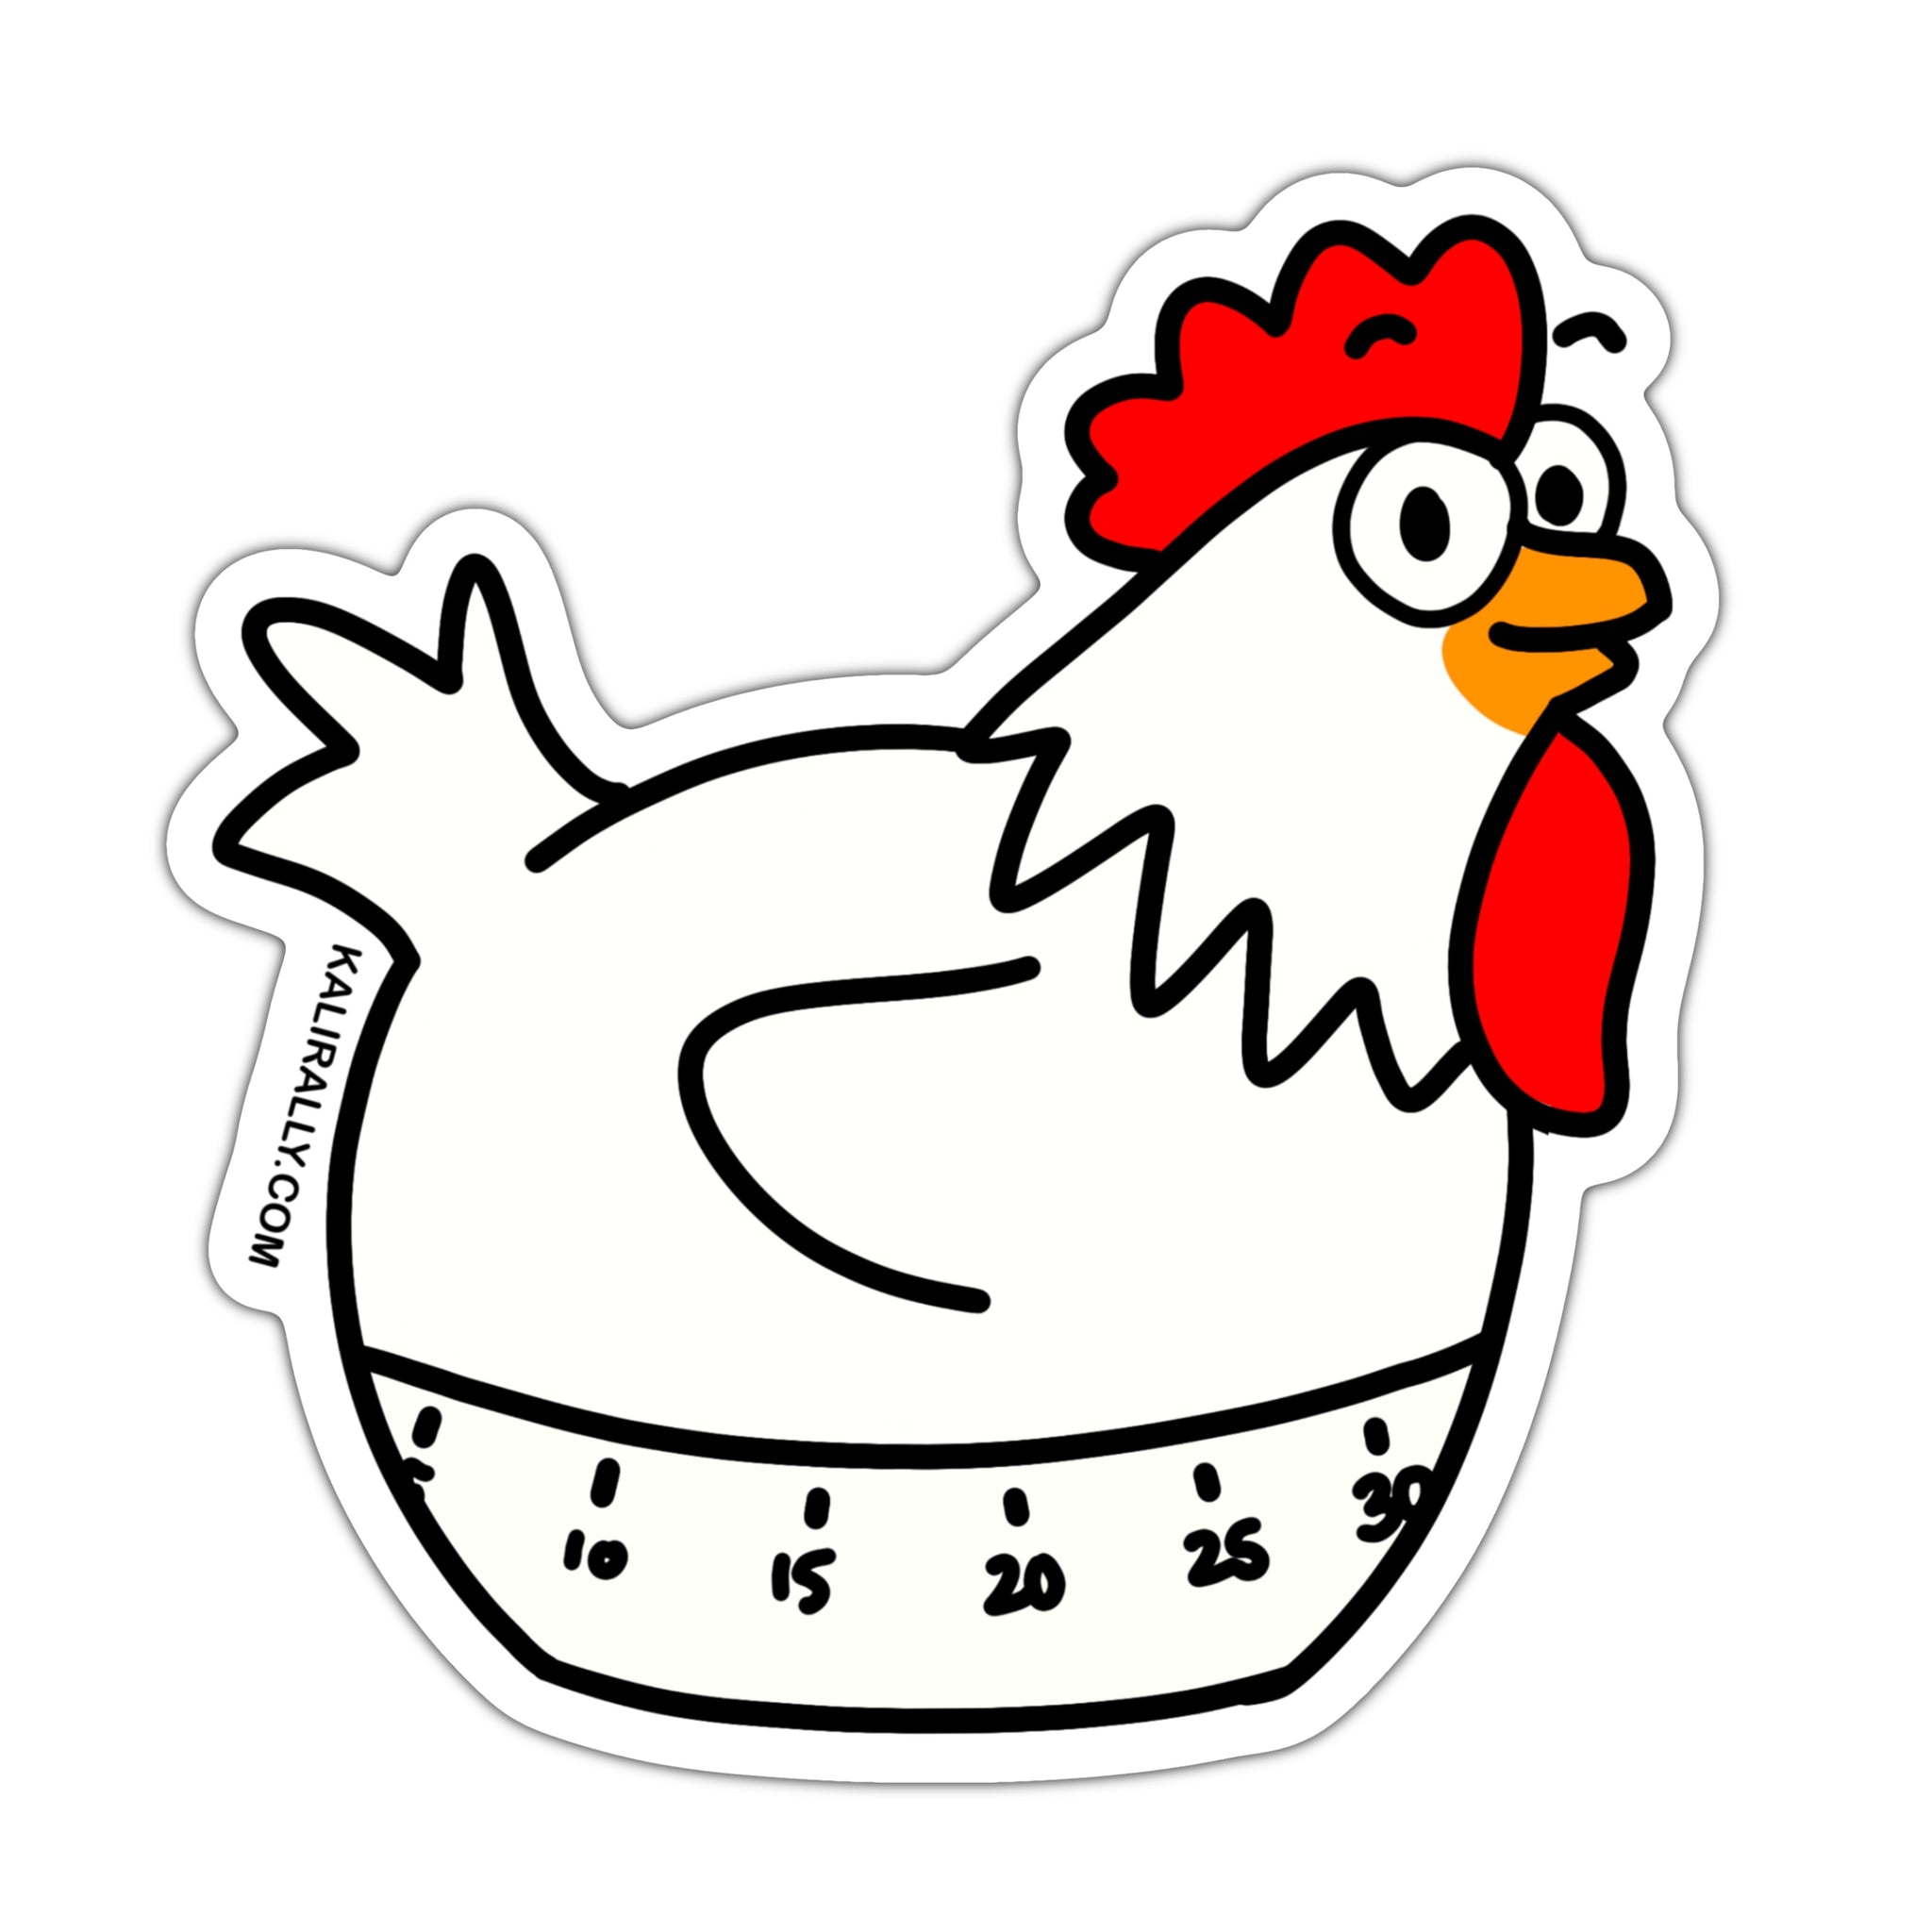 Funny chicken timer sticker, cute recipe book sticker, waterproof vinyl sticker for kitchen